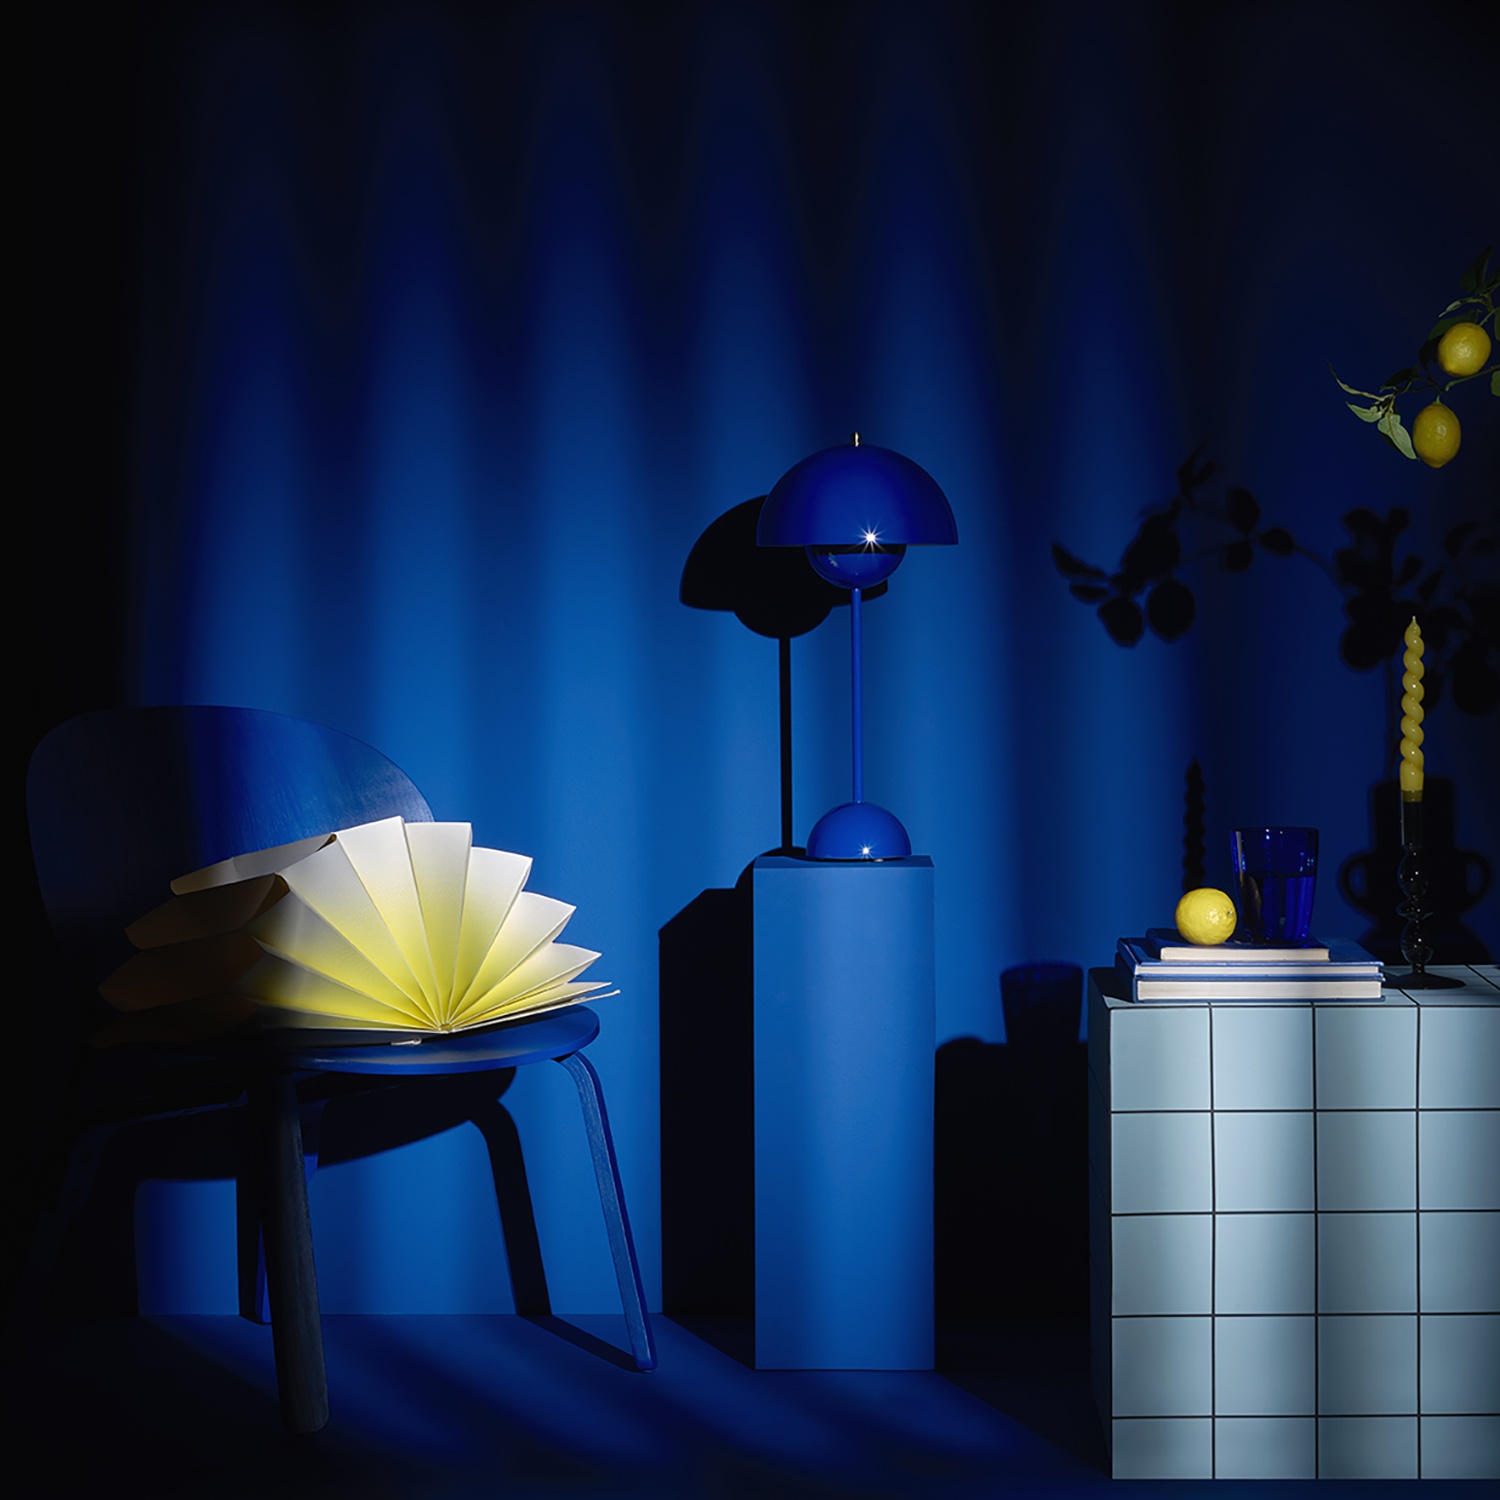 une nature morte comprenant une chaise, une table bleue, d'autres objets décoratifs très graphiques bleus cobalt et jaunes pastels/ La lumière de l'image joue le clair-obscur